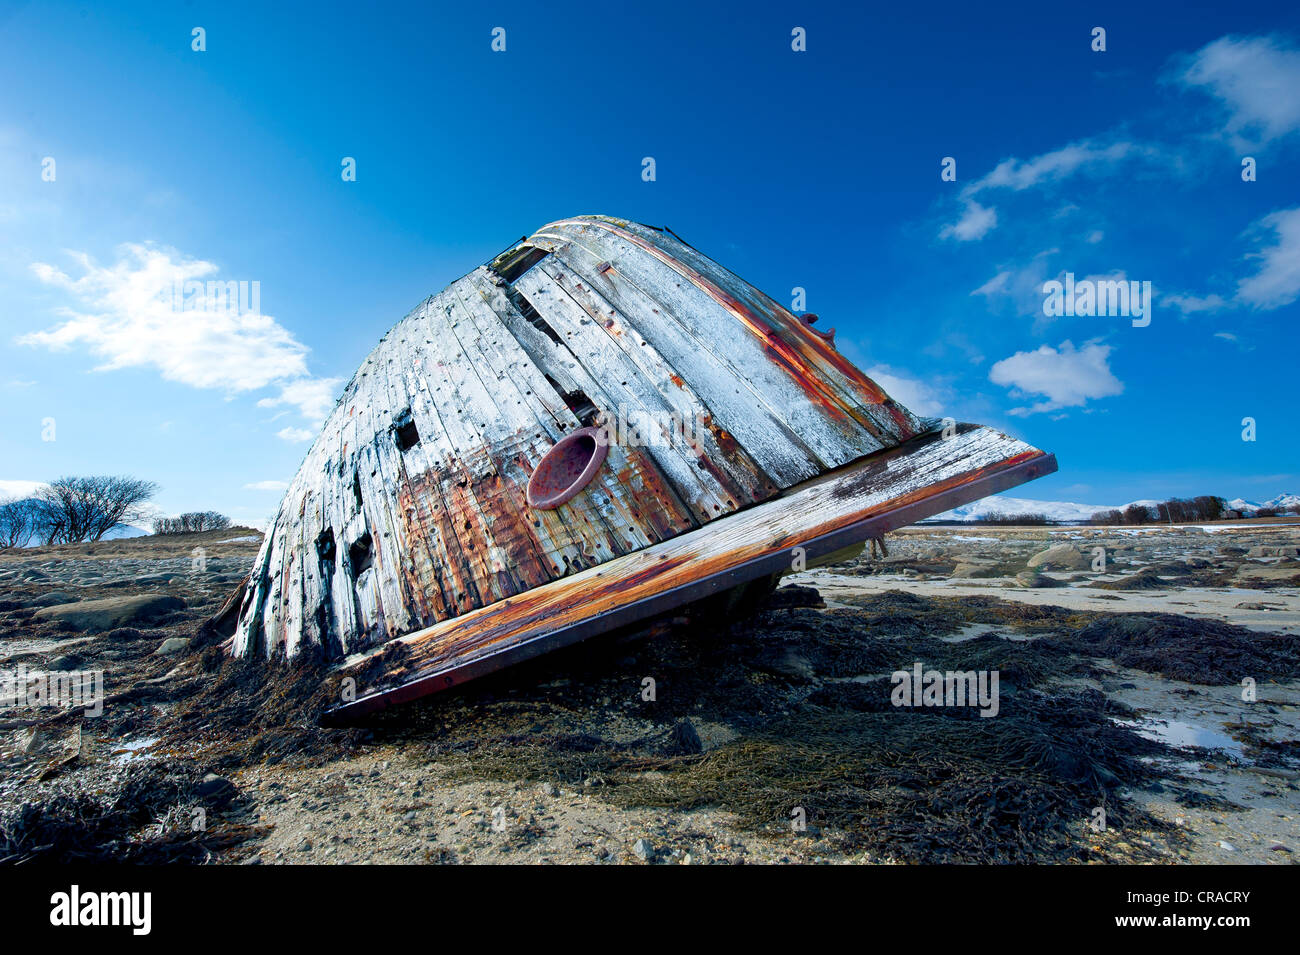 Old Ship wreck gisant incliné sur un rivage à marée basse Banque D'Images